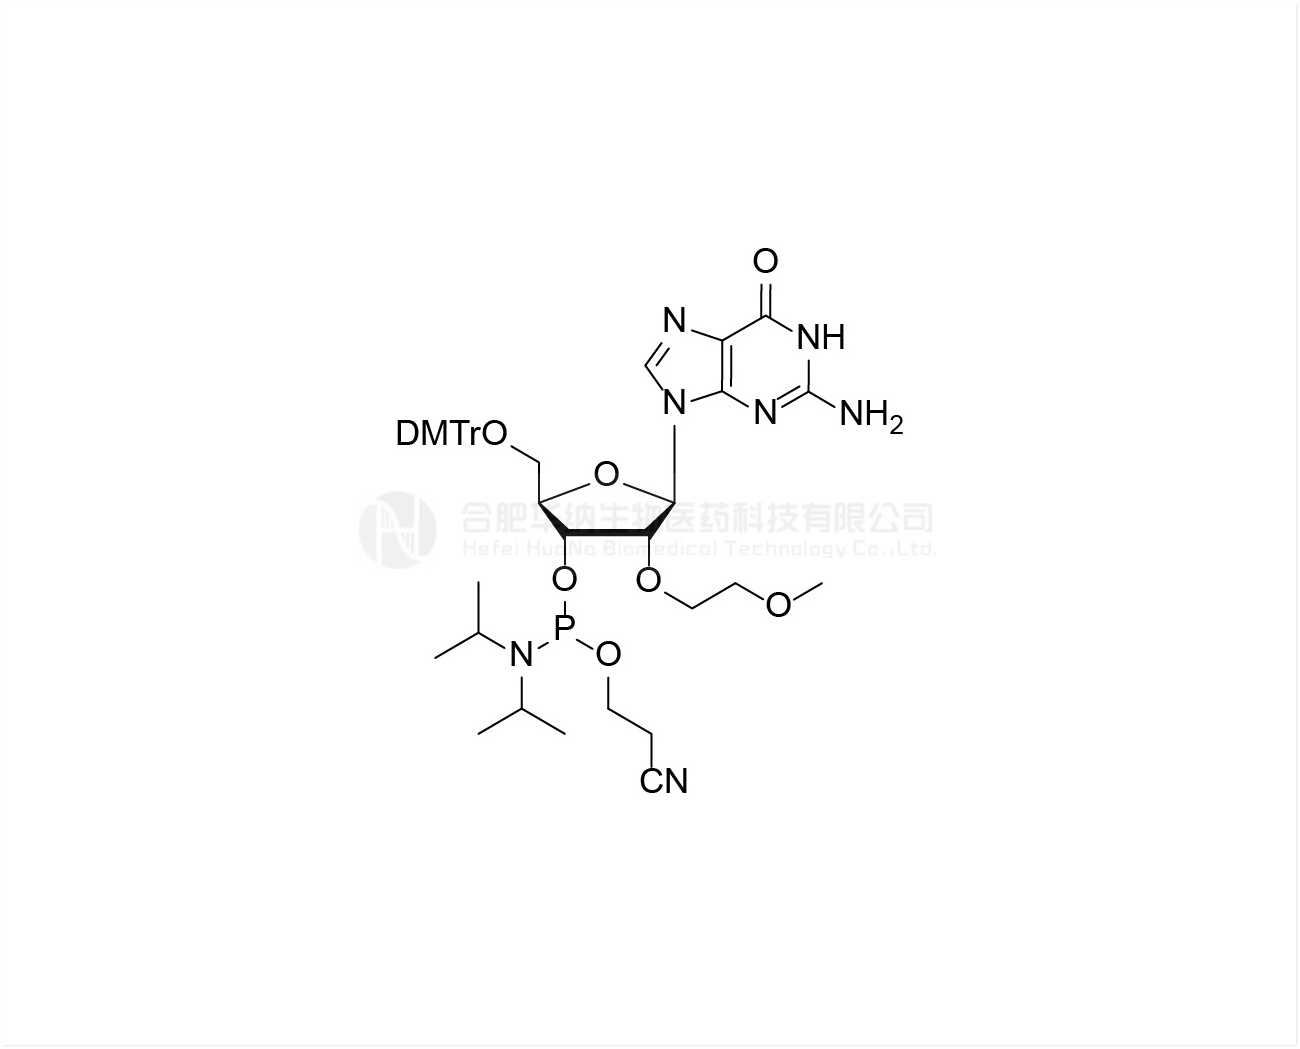 DMTr-2'-O-MOE-rG-3'-CE-Phosphoramidite